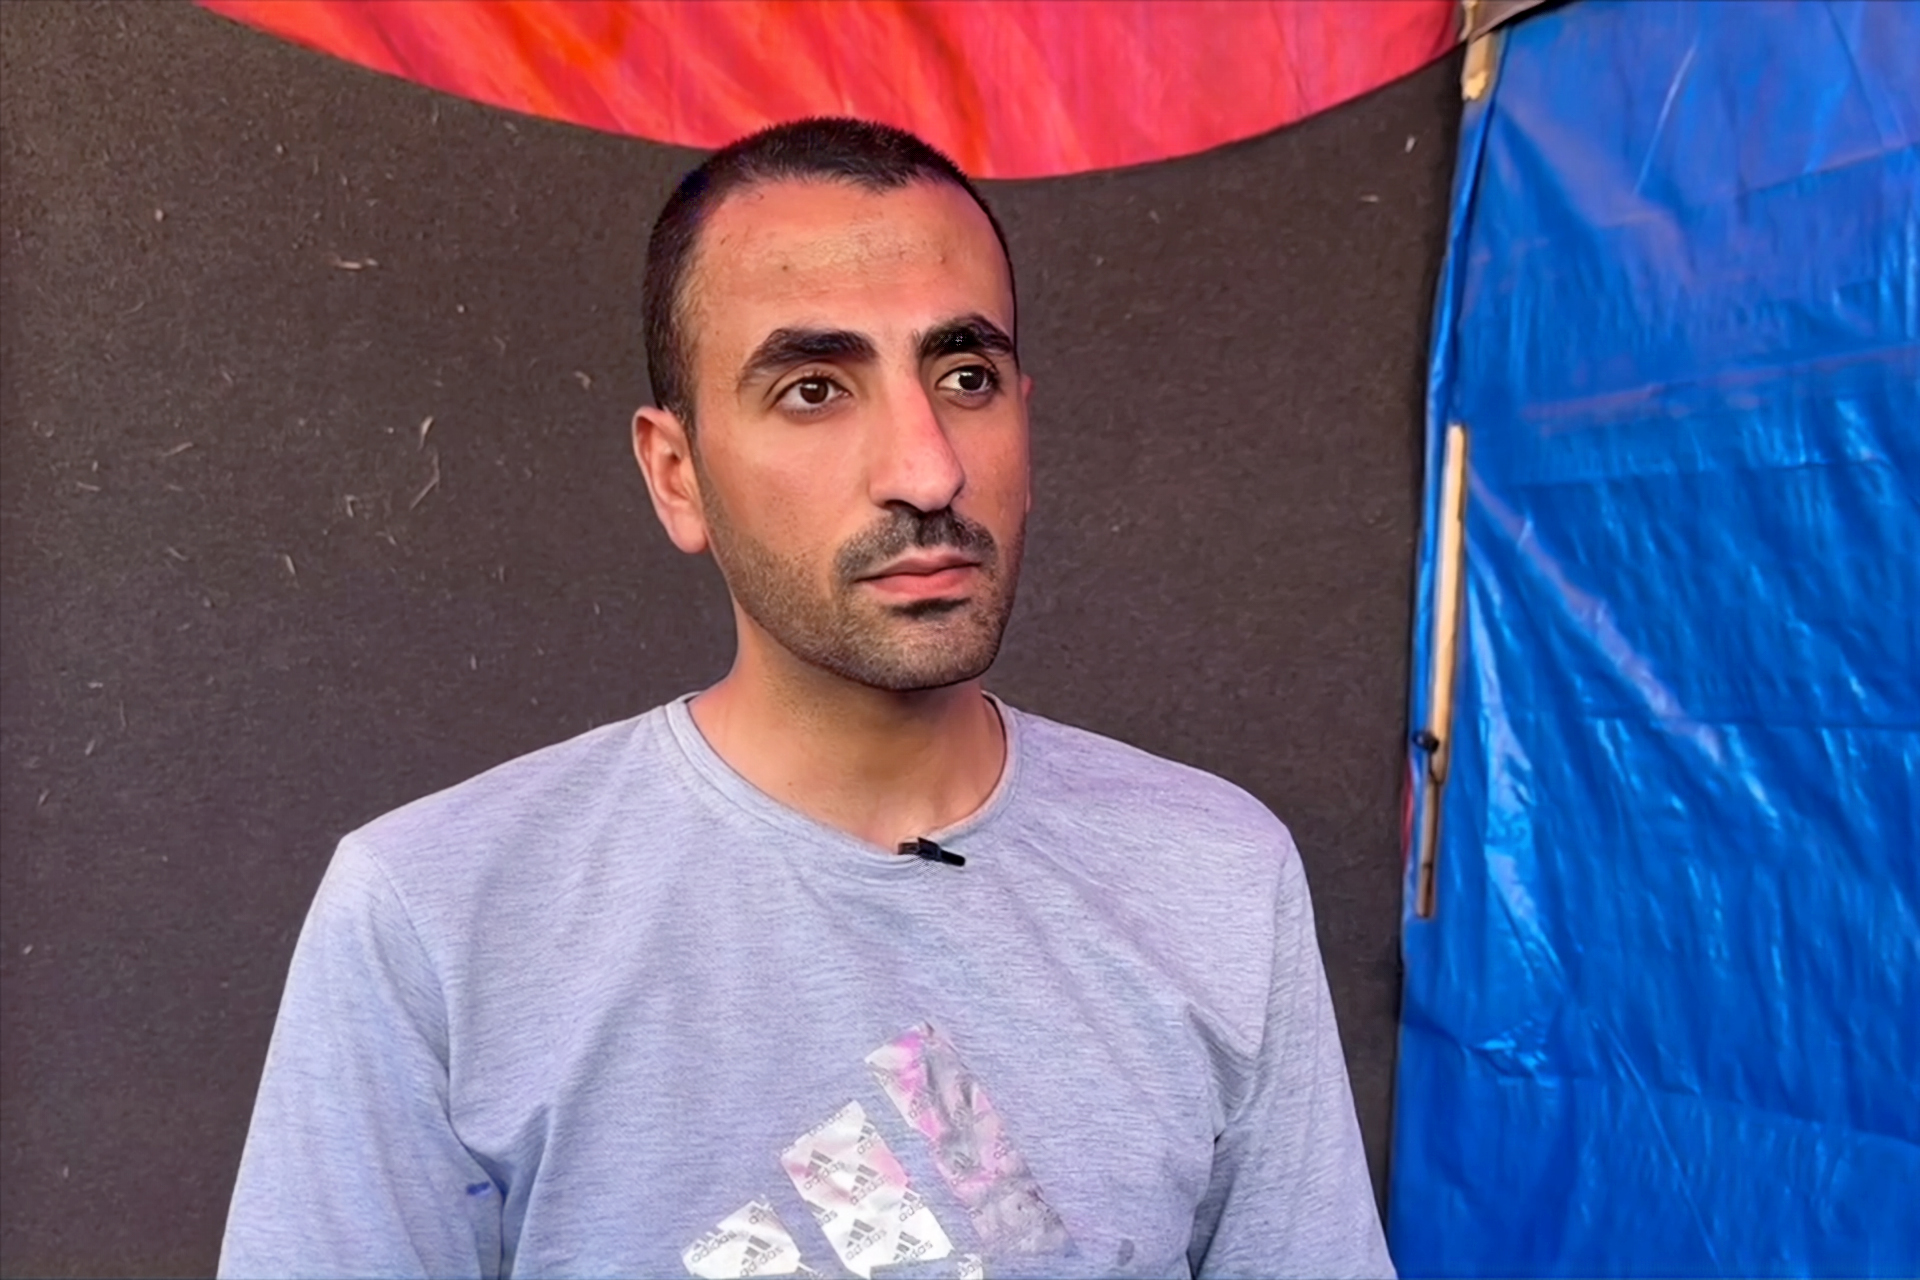 طبيب غزي محرر: الموت أهون من التعذيب بسجون إسرائيل | أخبار صحة – البوكس نيوز